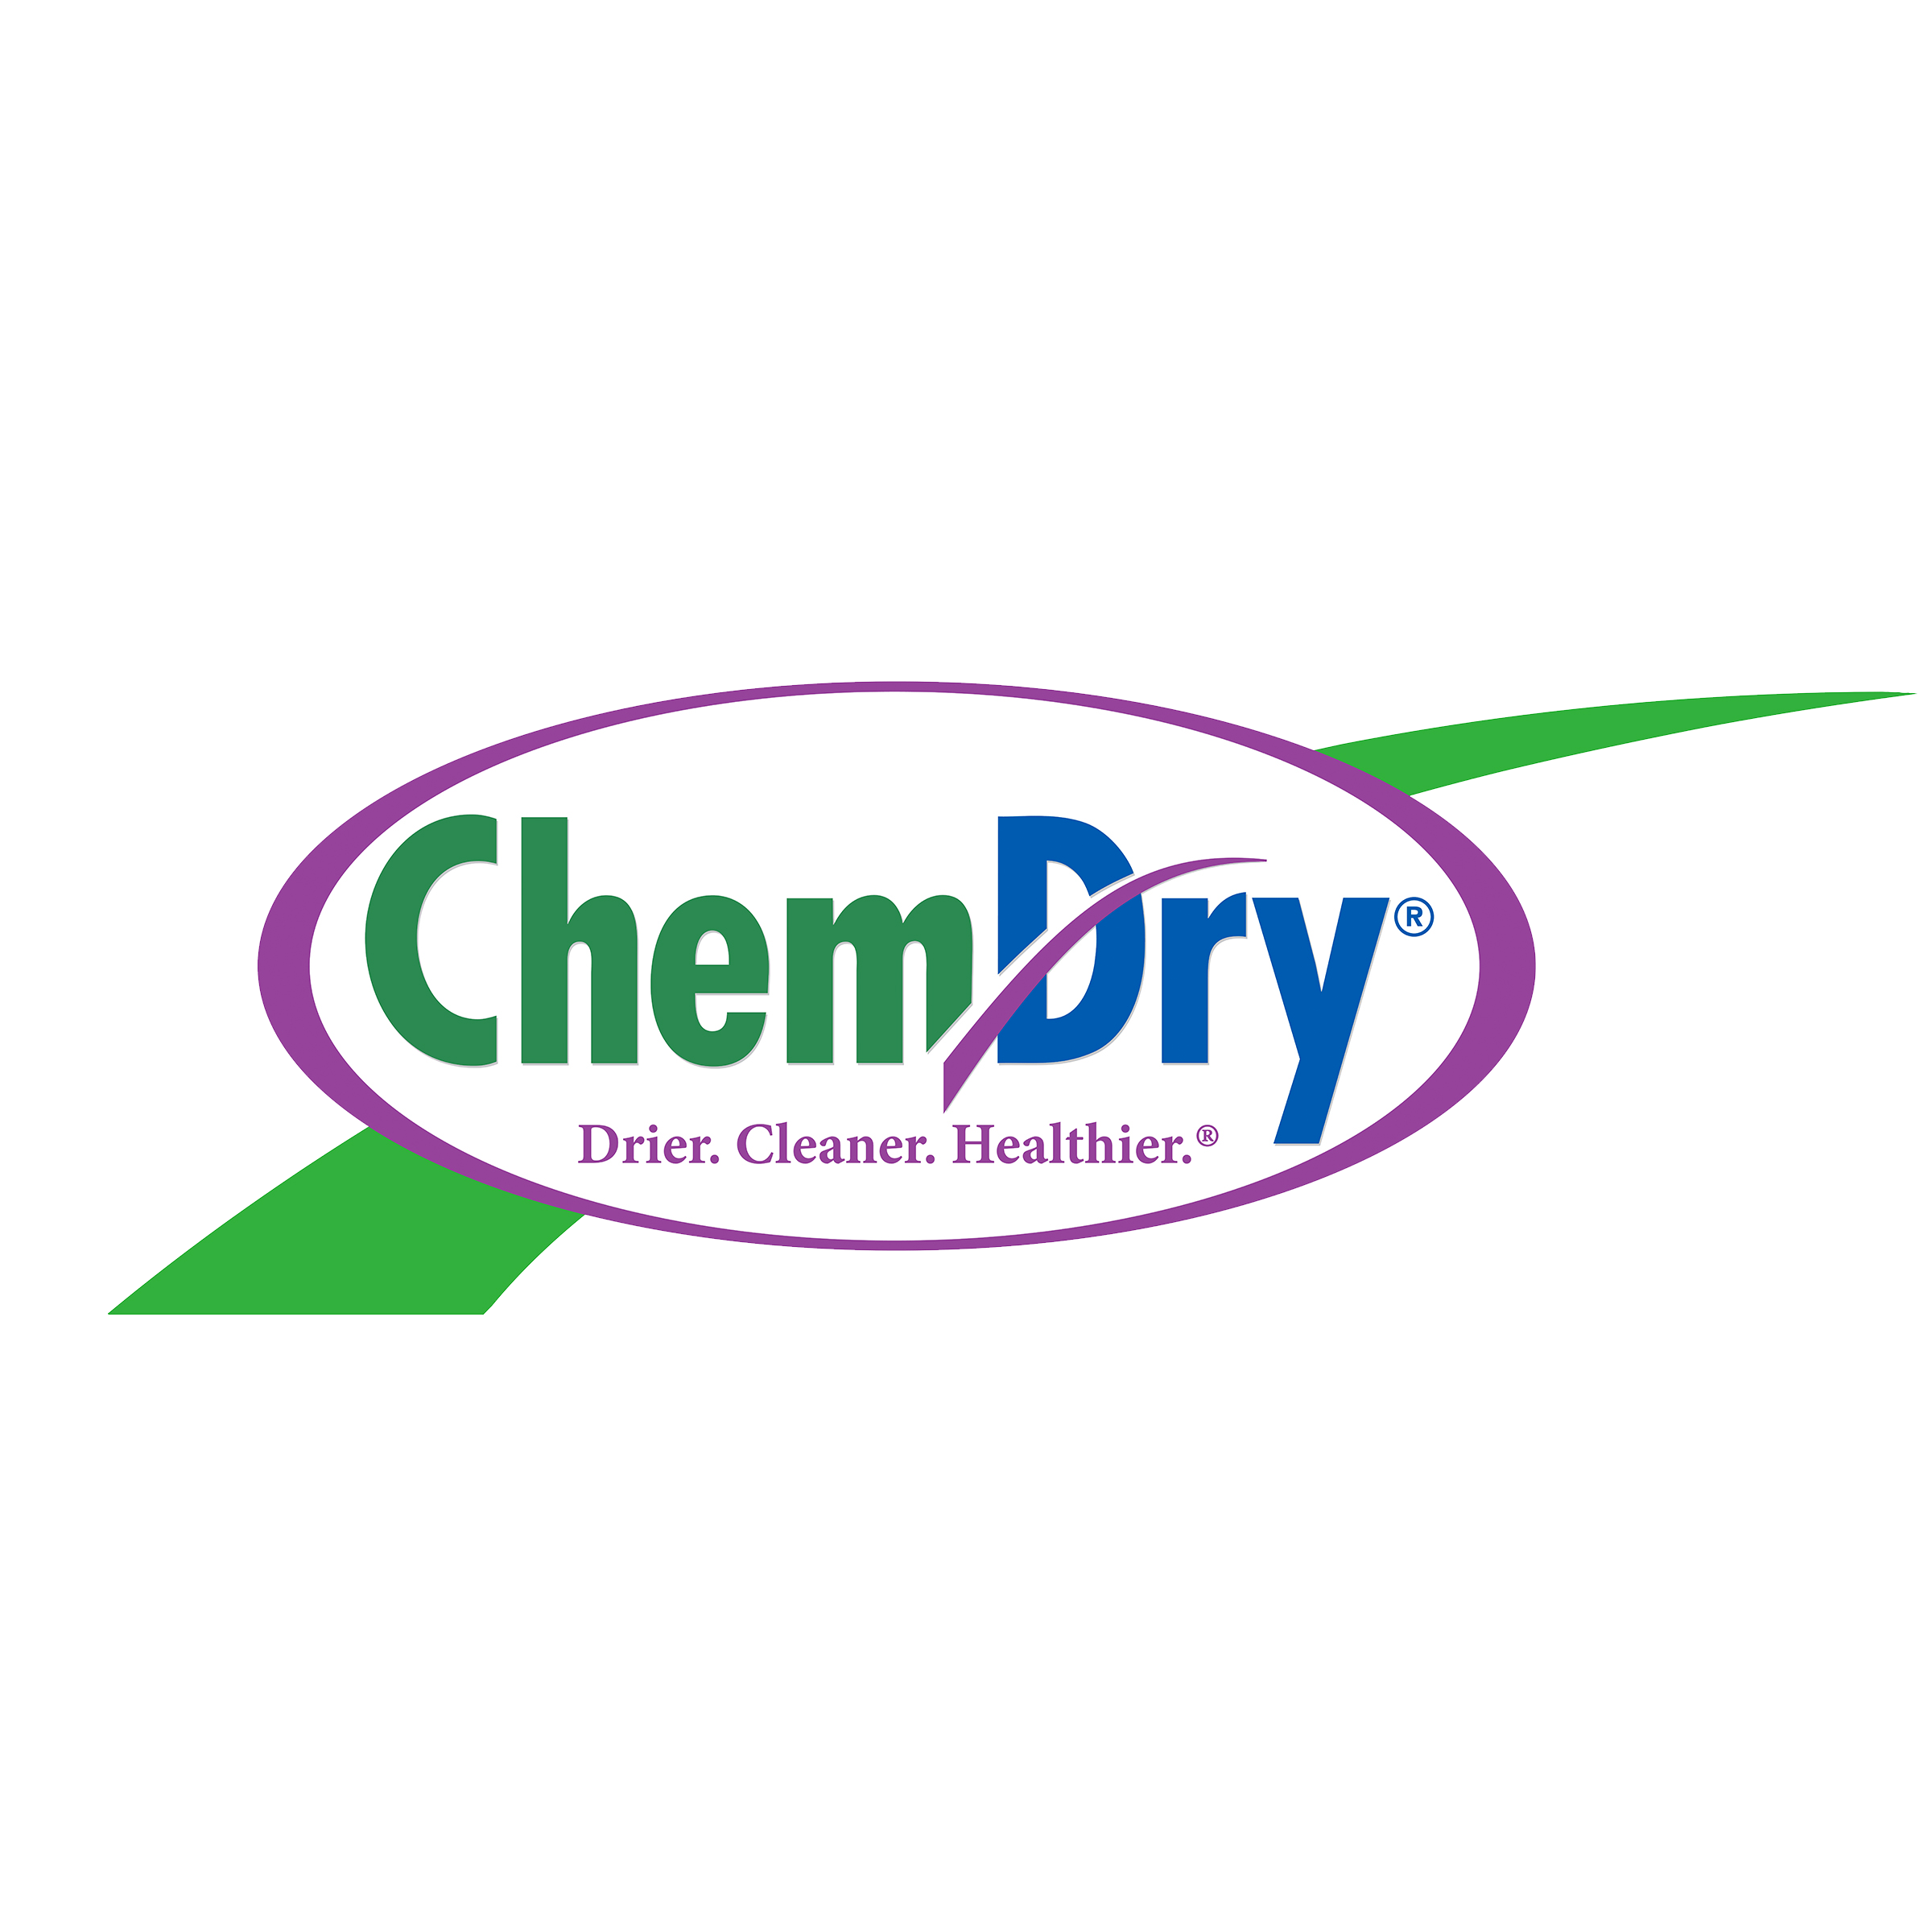 Chem family. Chem Dry of Bexar County. Chems.